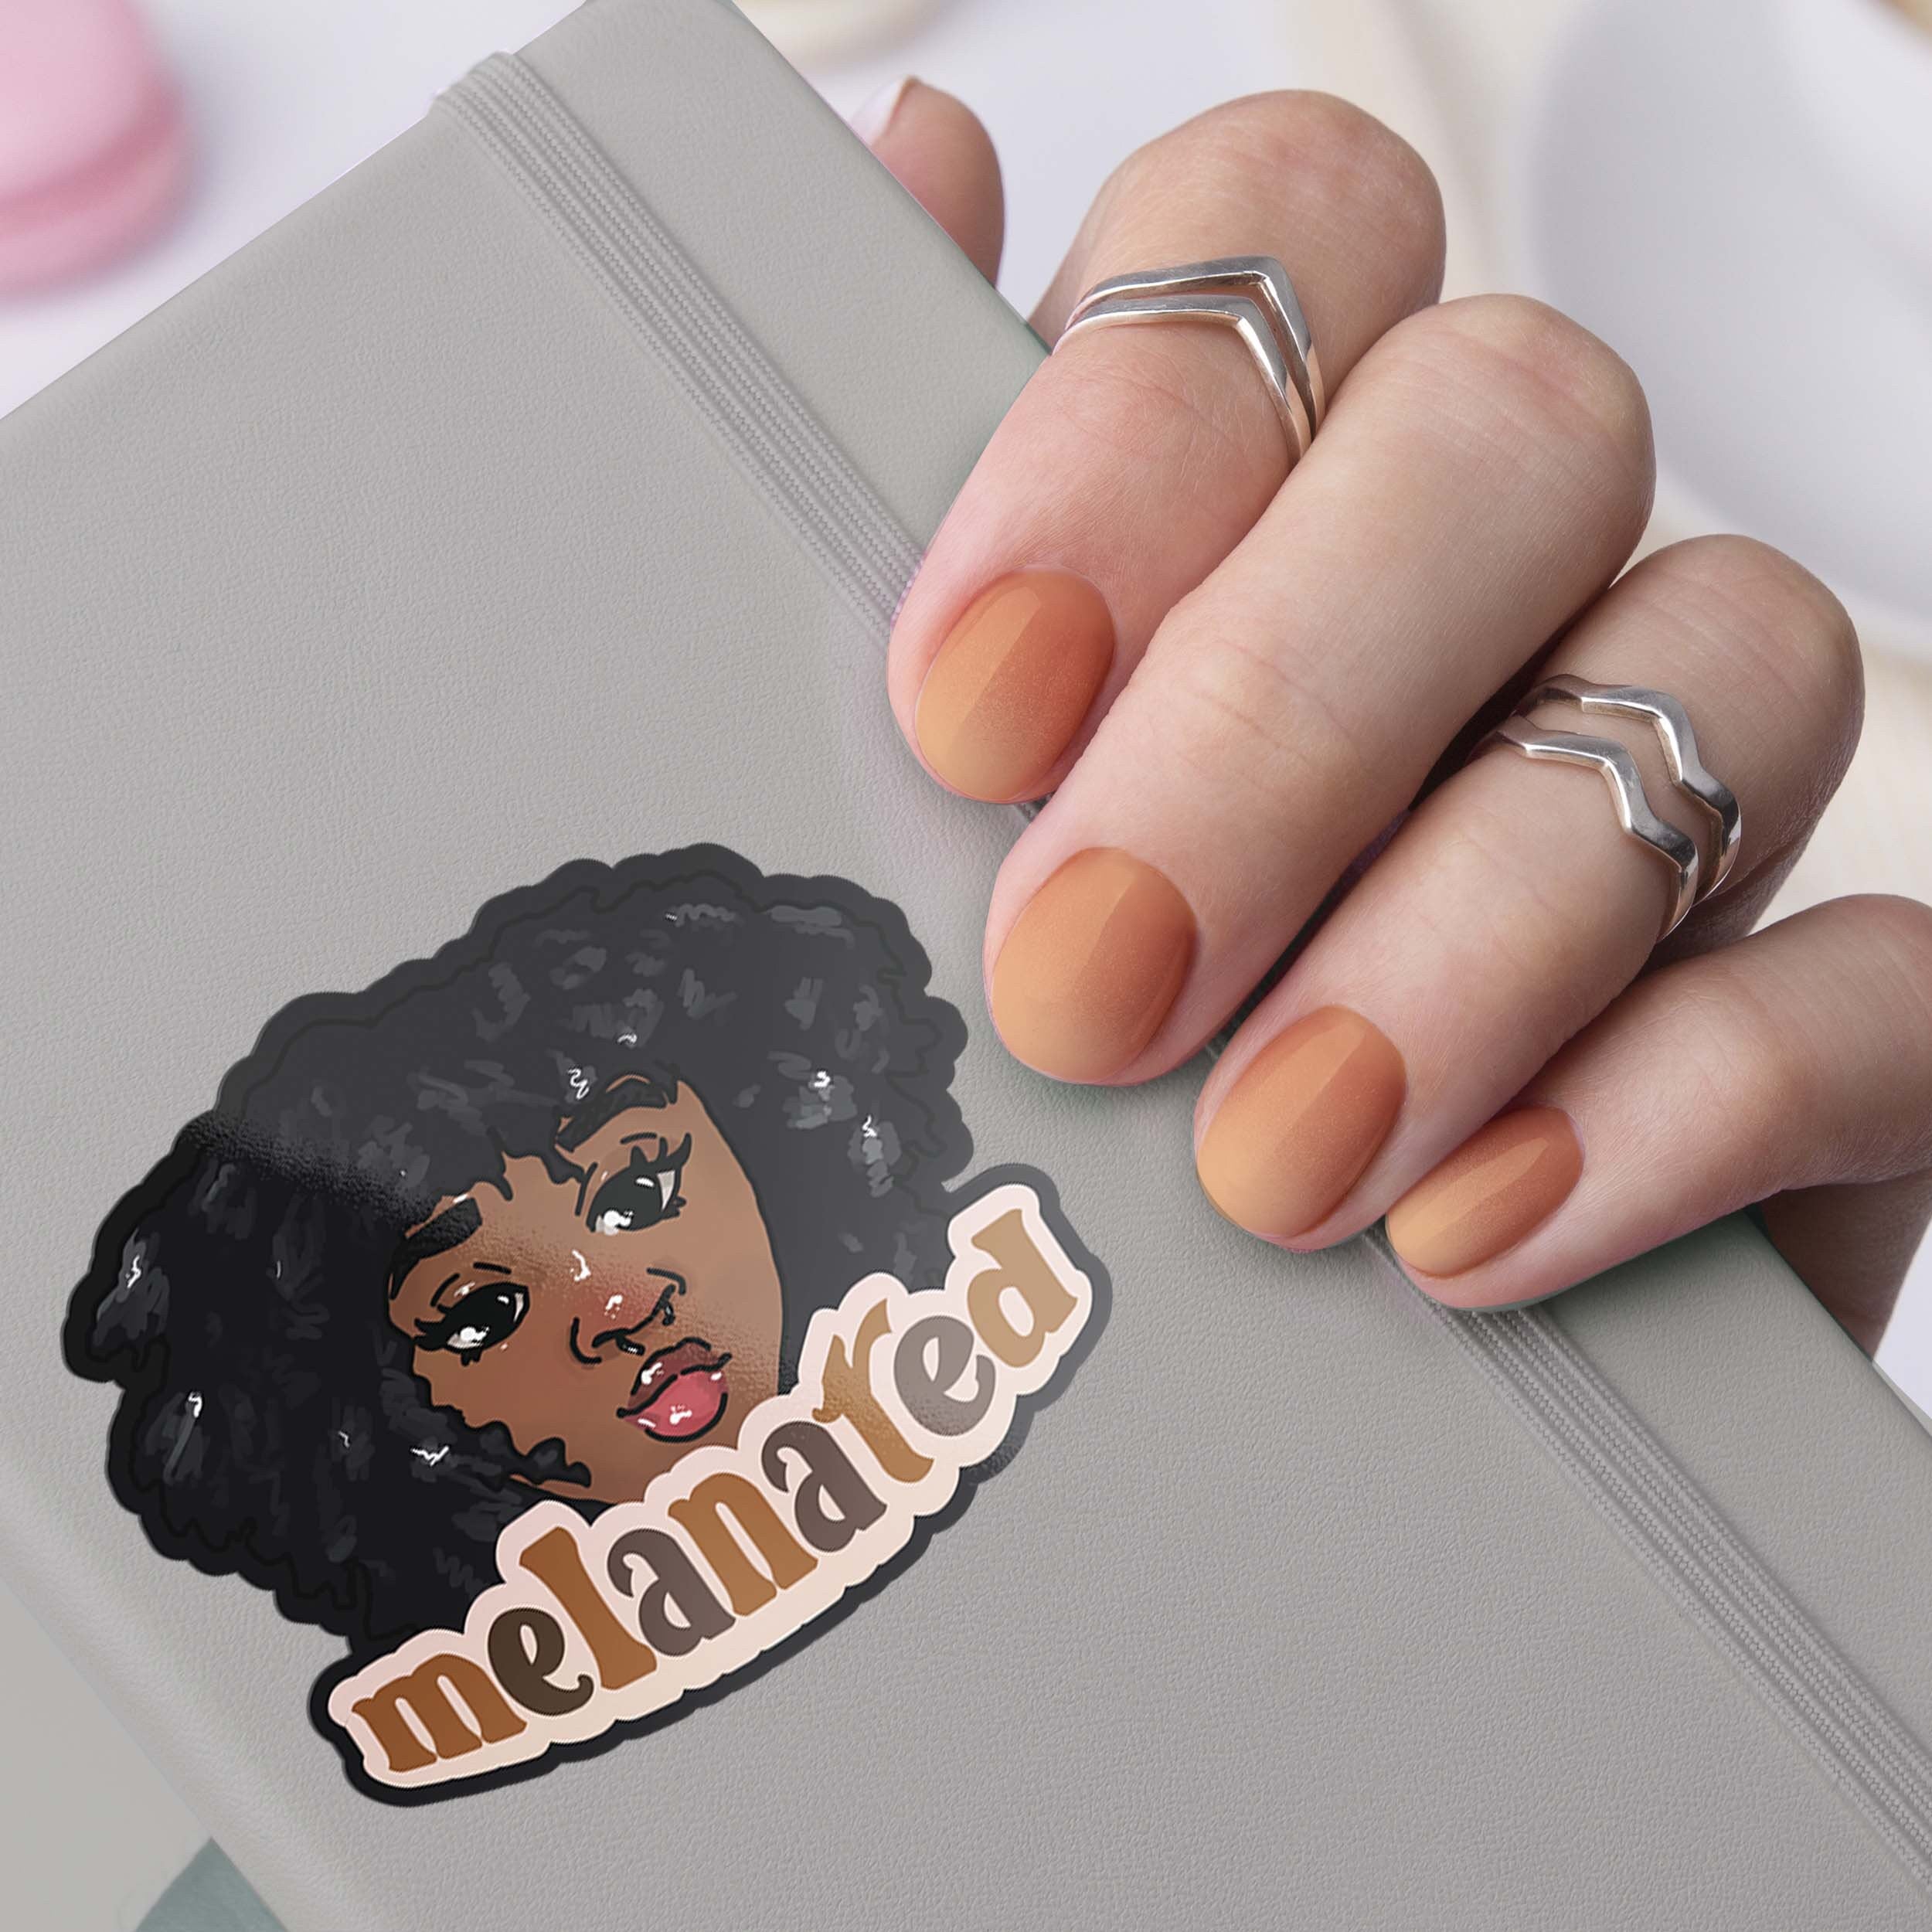 Black Girl Magic Melanated Vinyl Sticker, Melanin Afro Woman Jumbo Sticker, Gifts for Women of Color